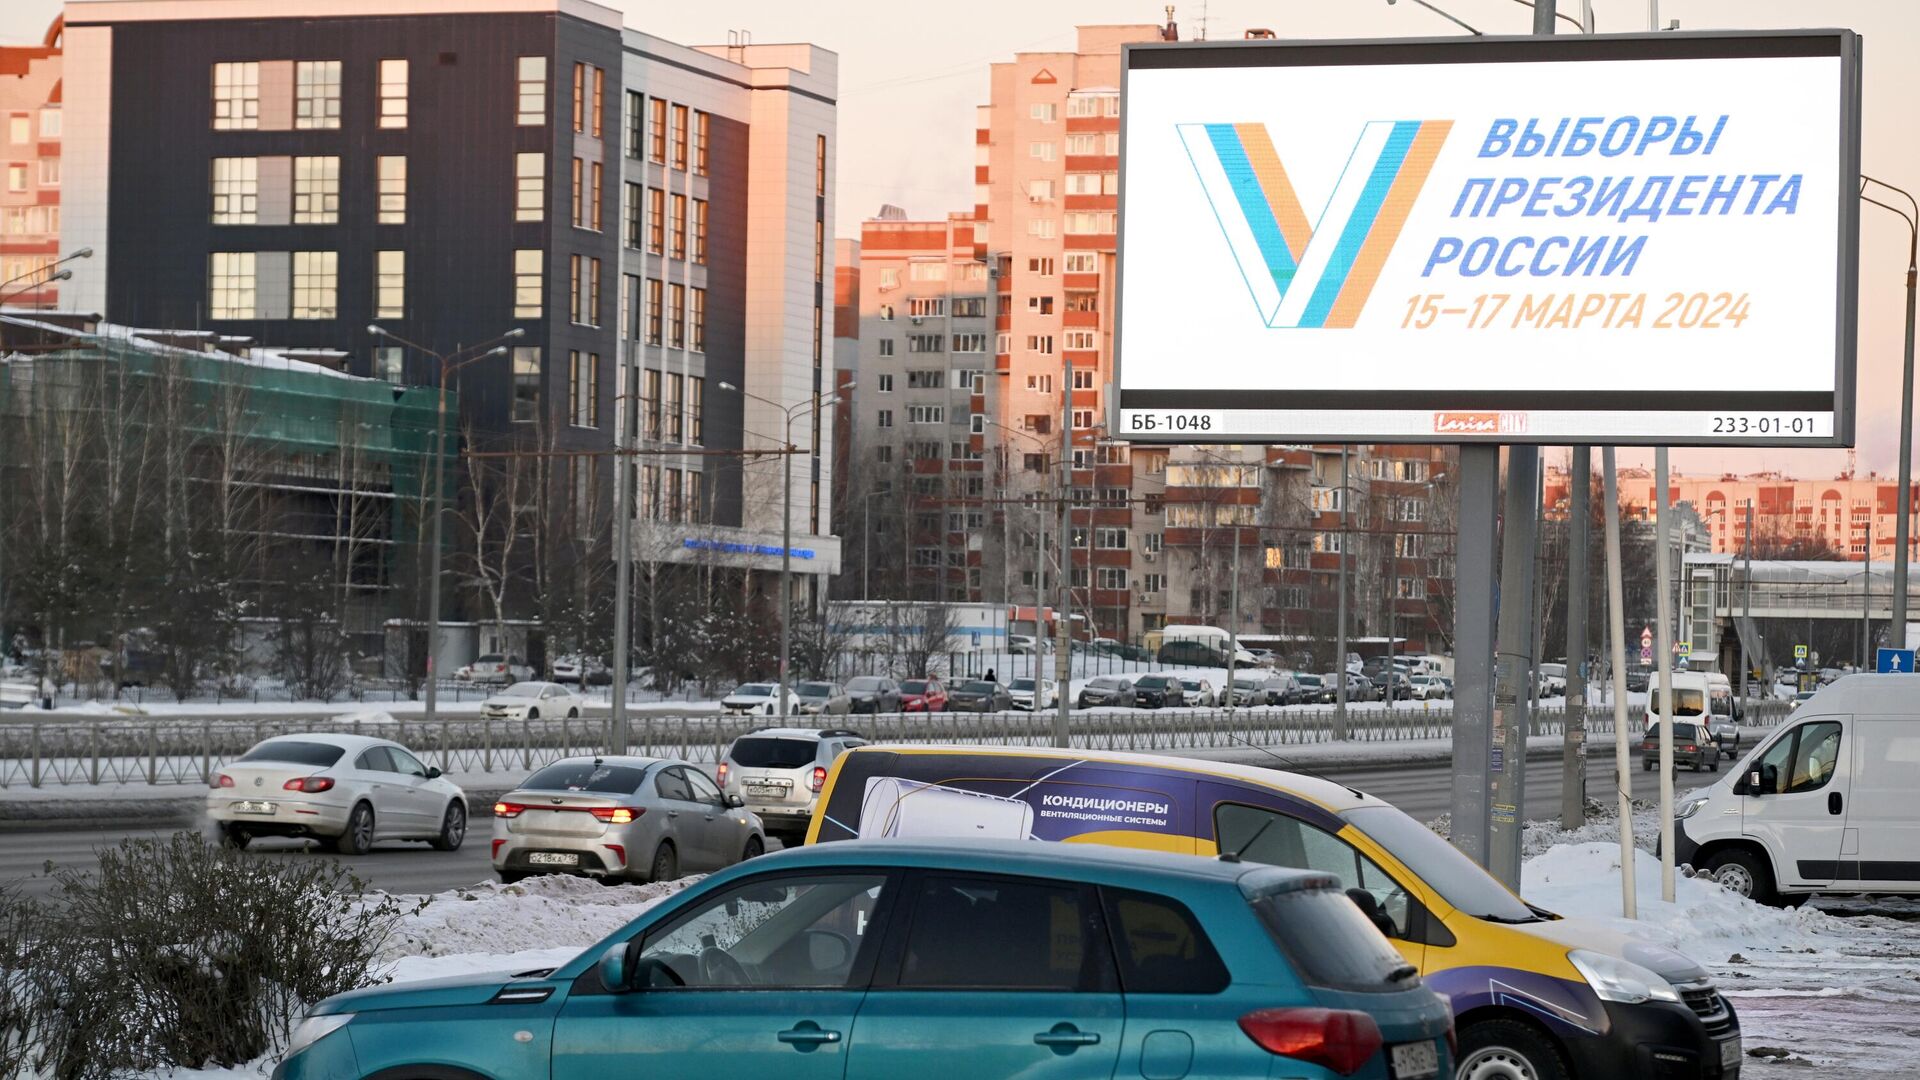 Агитационный предвыборный билборд на одной из улиц в Казани1